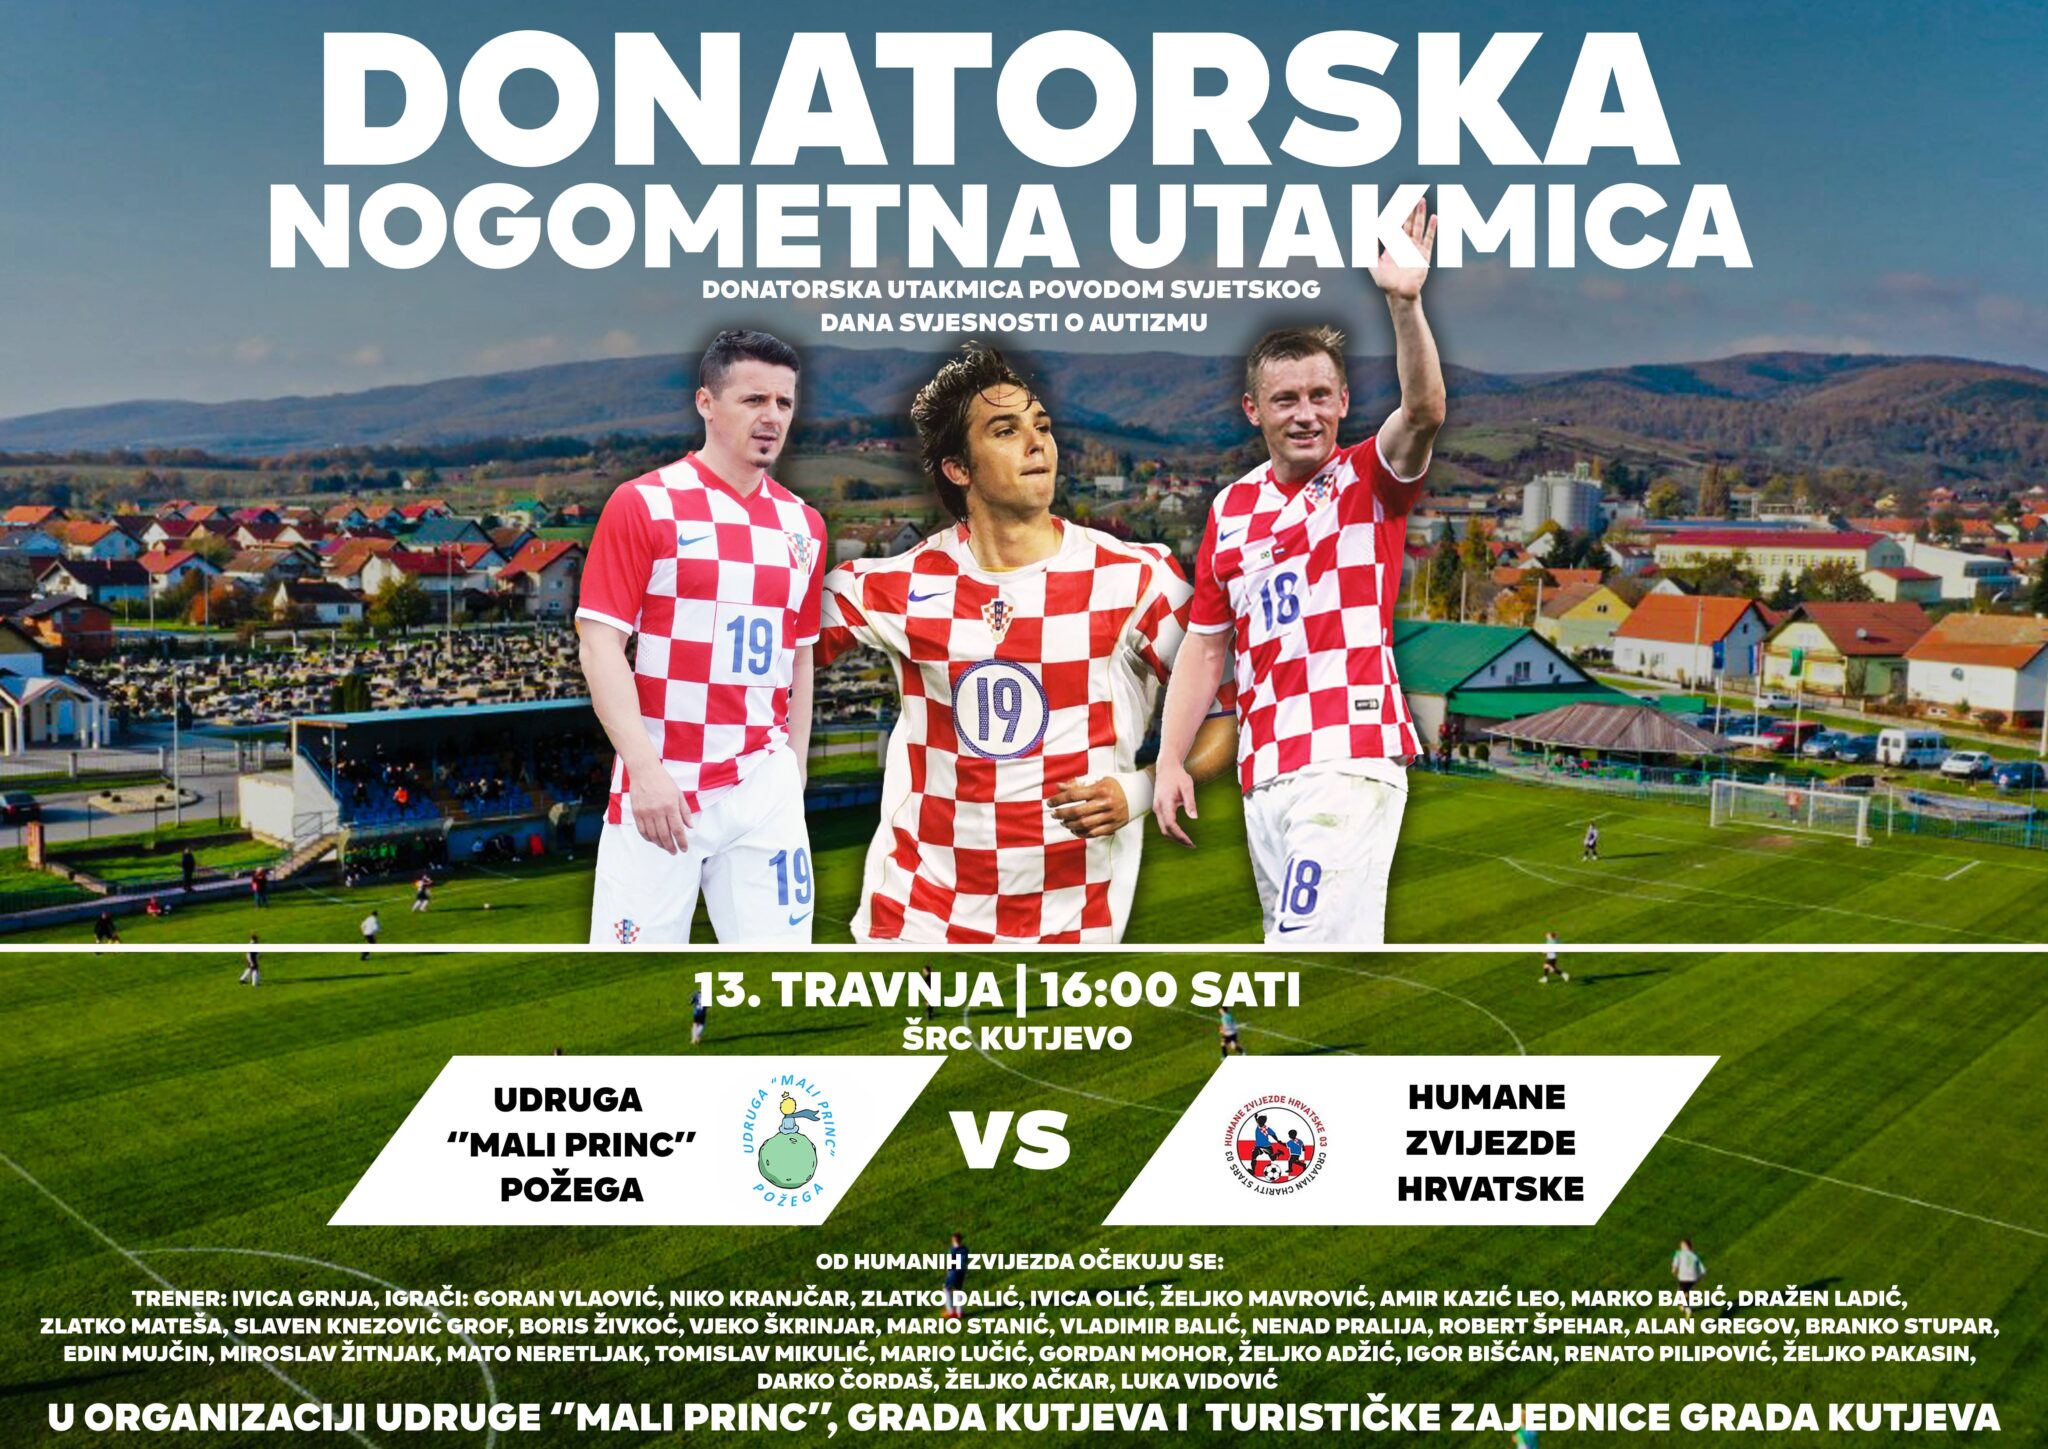 Požega.eu | Donatorska nogometna utakmica nam se bliži: U Kutjevo dolaze Dalić, Kranjčar, Olić, Vlaović i druge legende